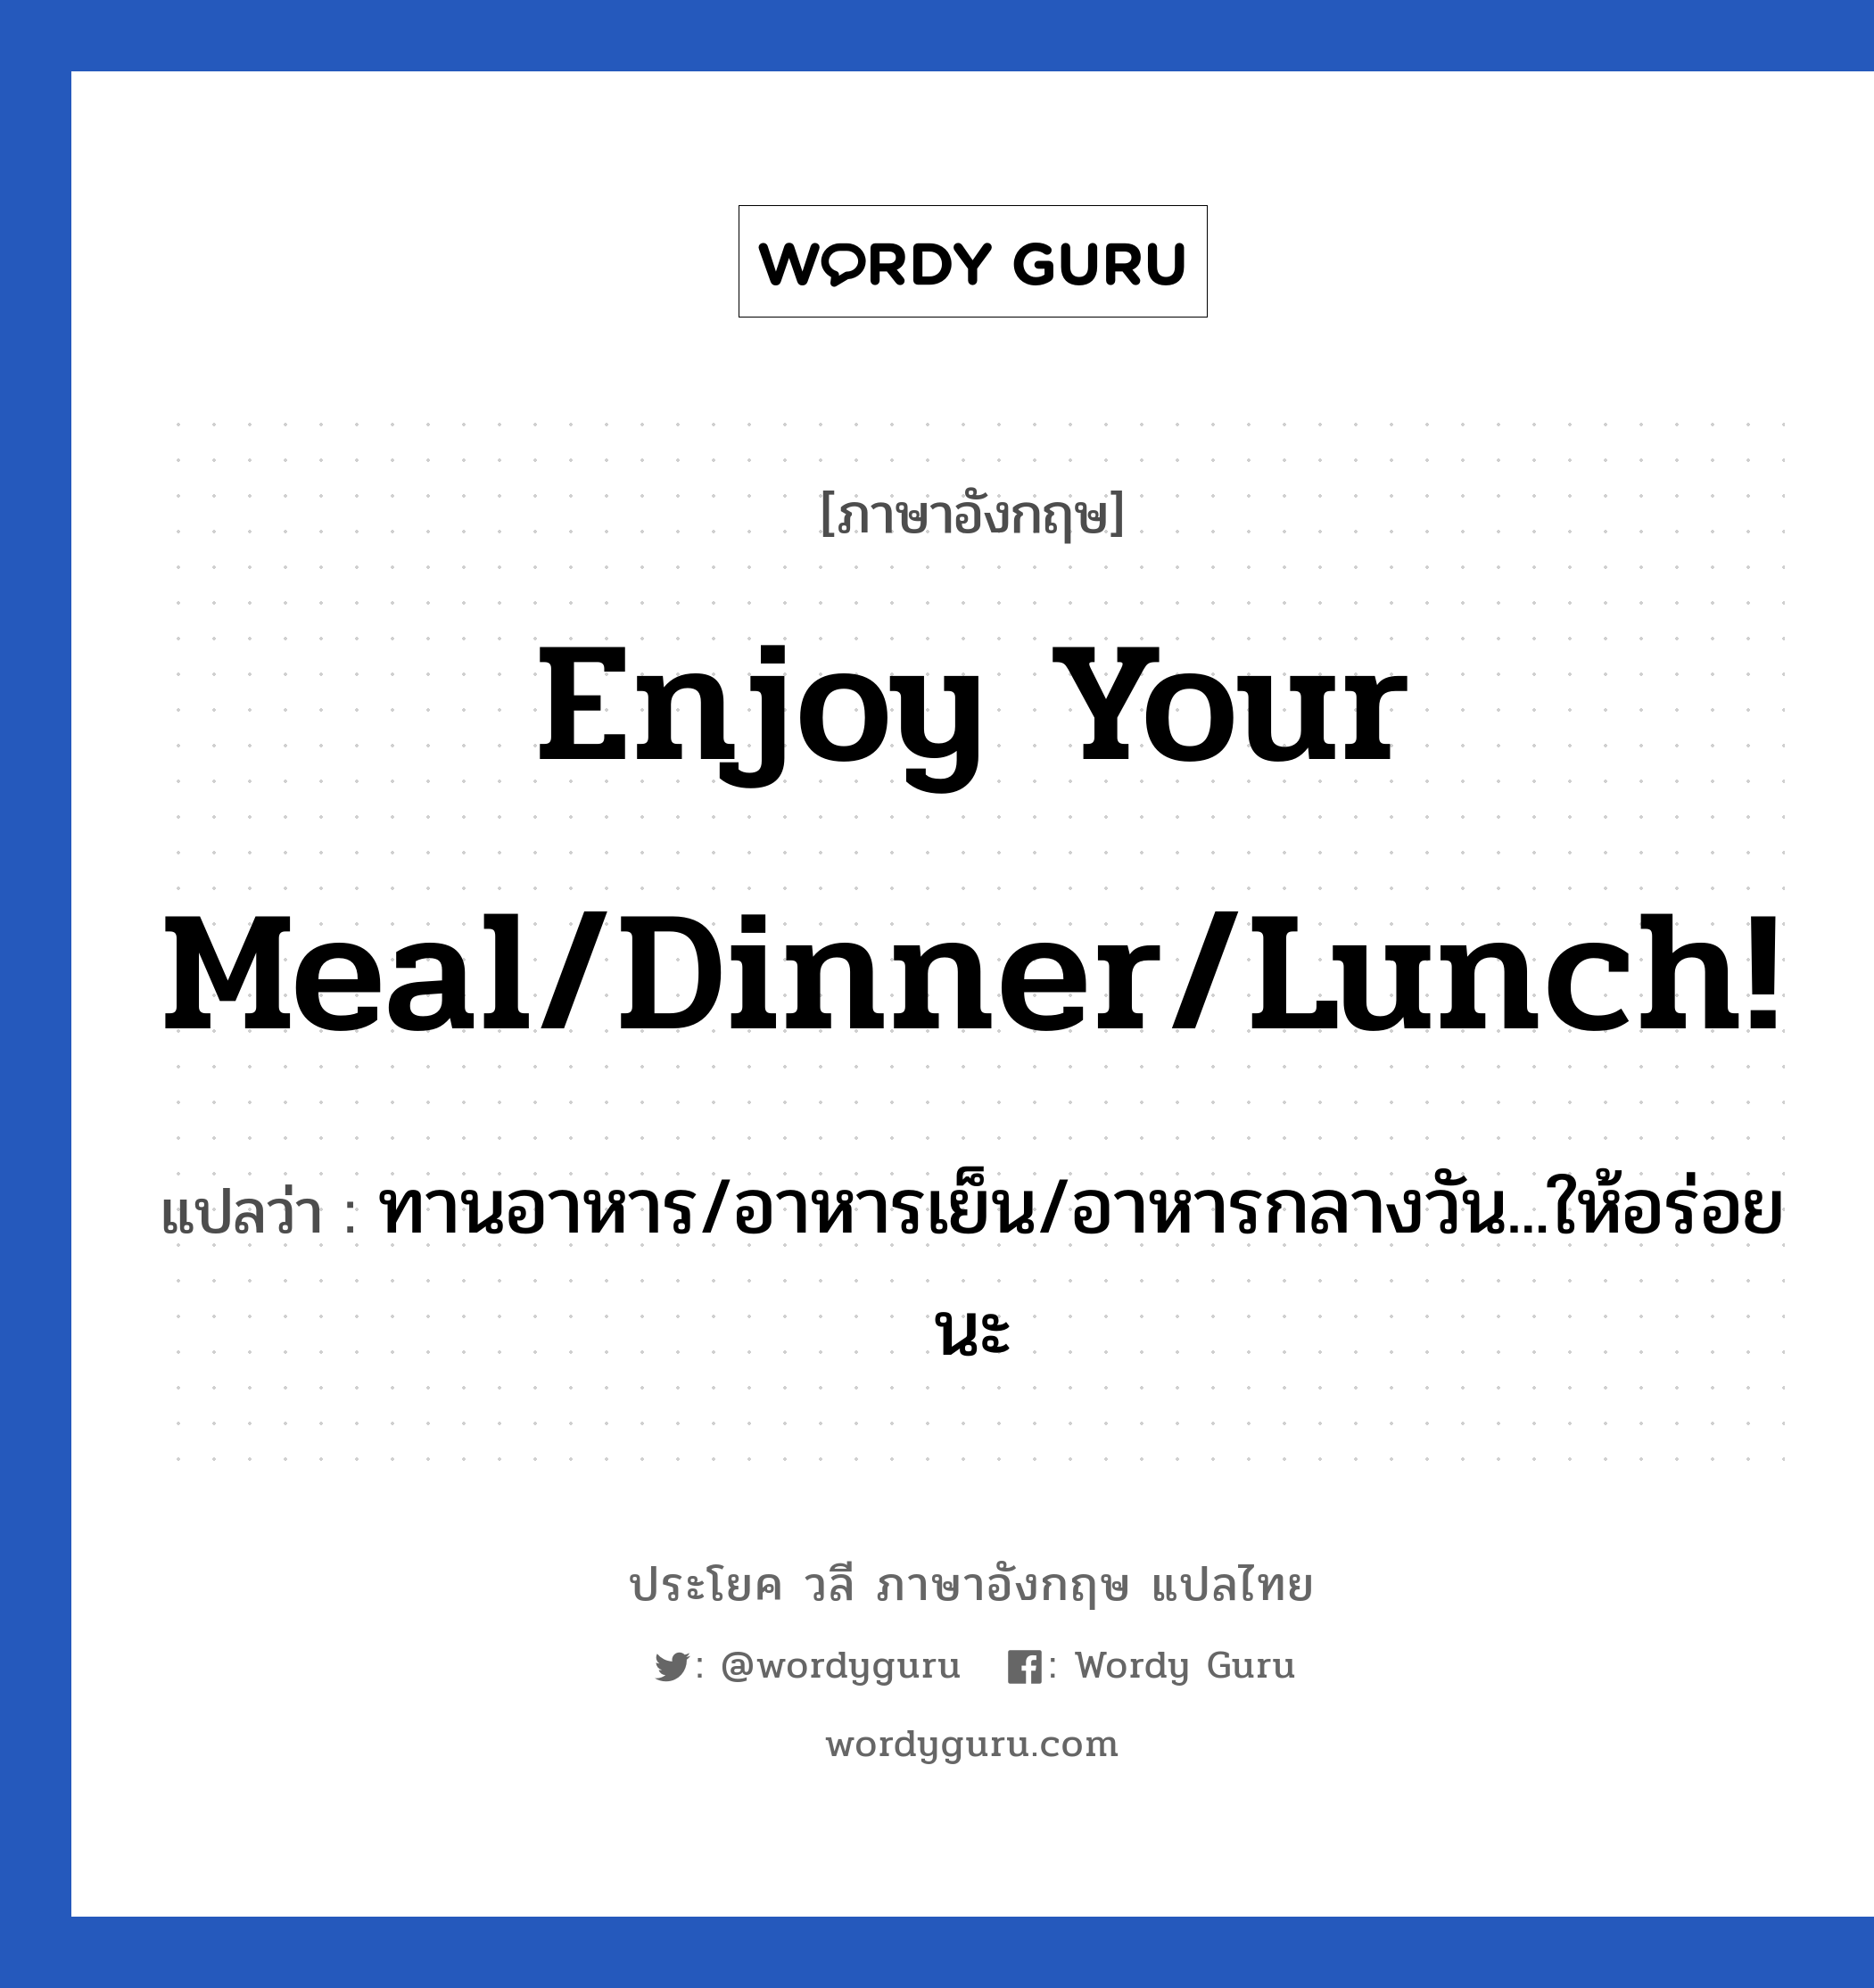 Enjoy your meal/dinner/lunch! แปลว่า?, วลีภาษาอังกฤษ Enjoy your meal/dinner/lunch! แปลว่า ทานอาหาร/อาหารเย็น/อาหารกลางวัน...ให้อร่อยนะ หมวด วลีทั่วไป